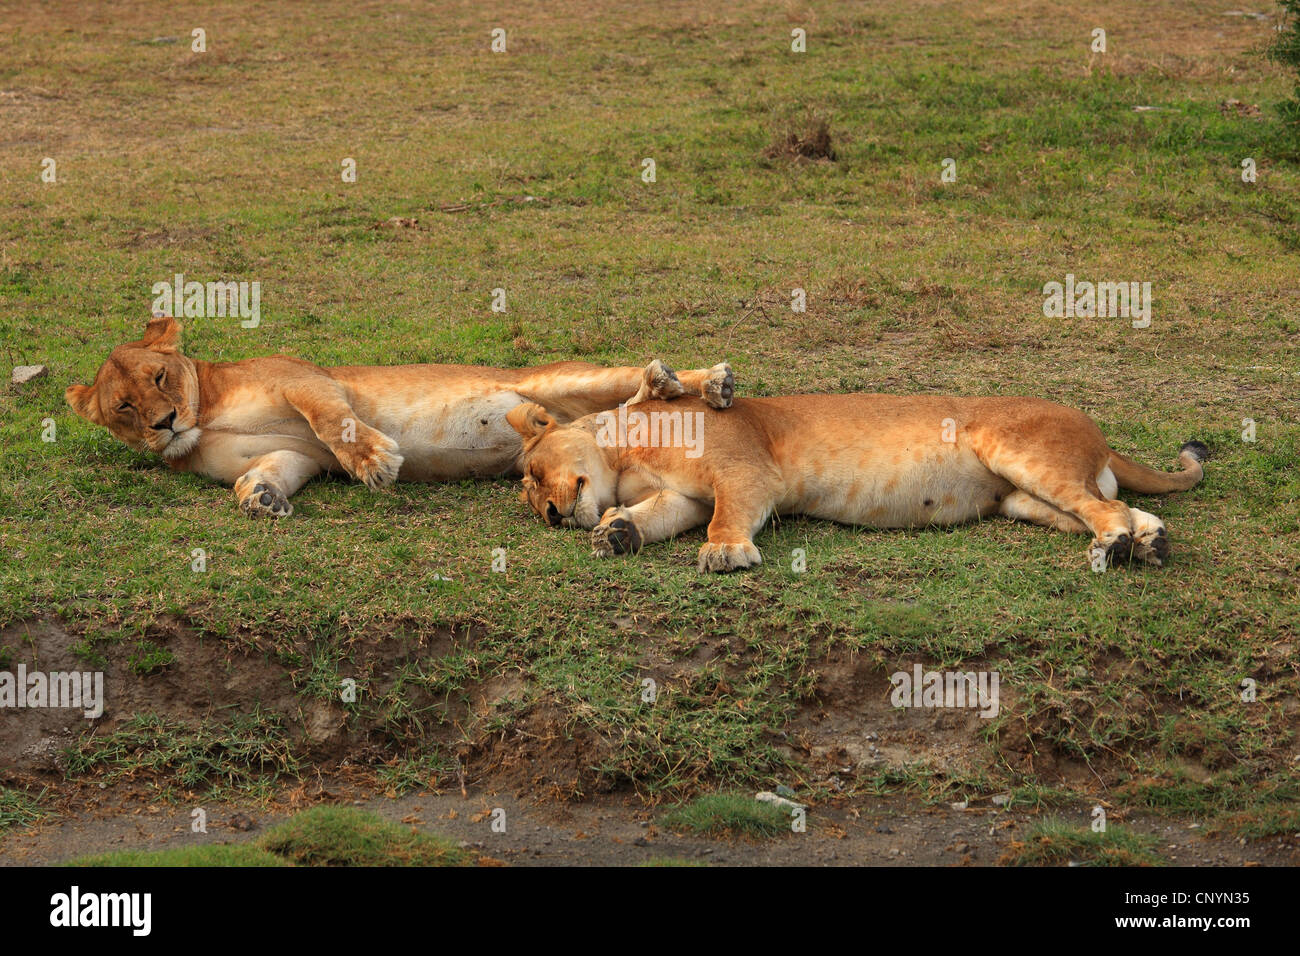 Lion (Panthera leo), deux lions de couchage , Tanzanie, la Ngorongoro Conservation Area Banque D'Images